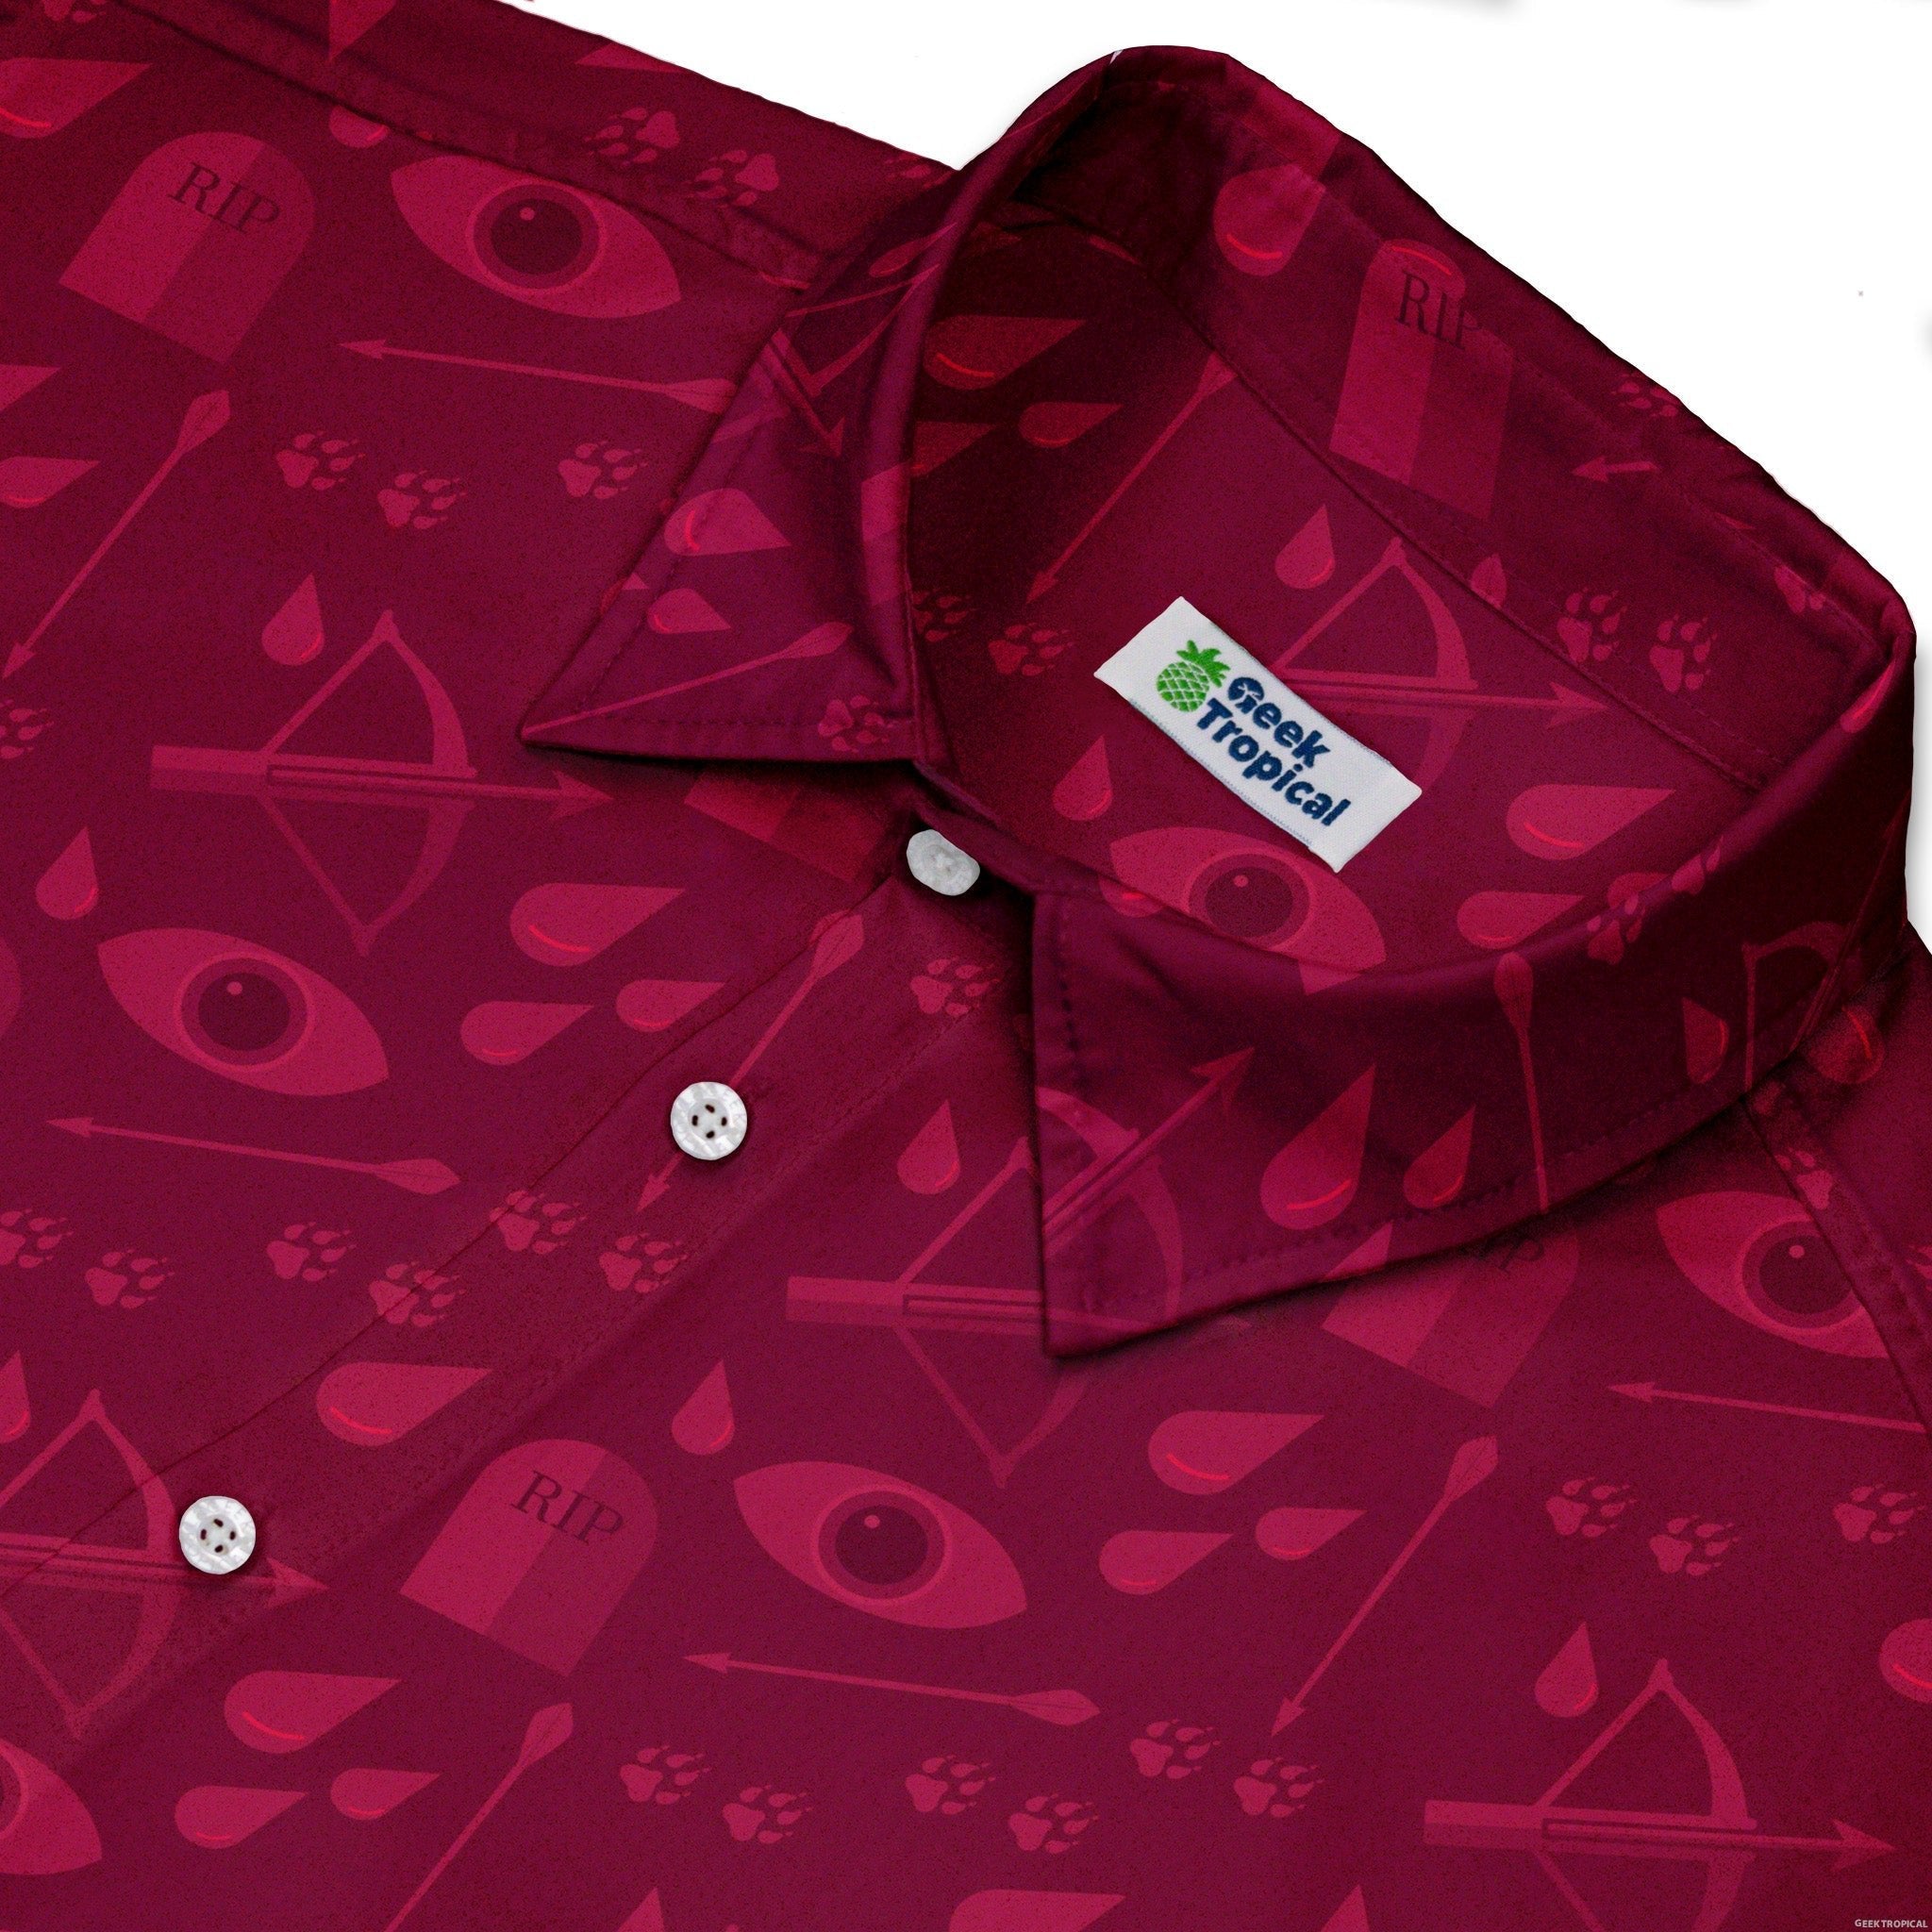 Dnd Blood Hunter Class Button Up Shirt - adult sizing - Design by Heather Davenport - dnd & rpg print